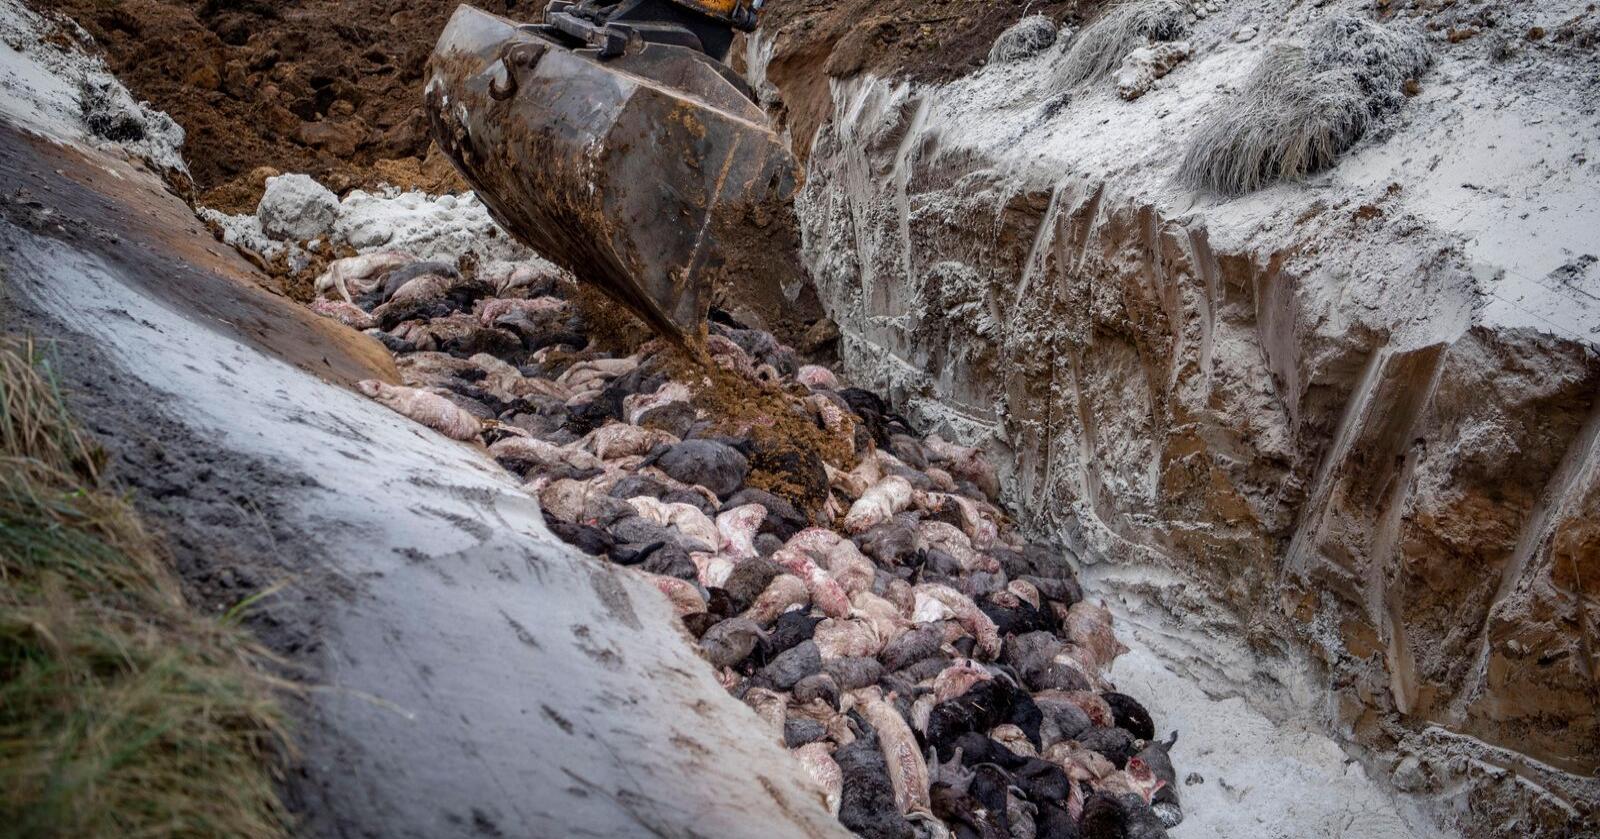 Da hundretusenvis av mink ble avlivet i høst, ble de ved flere steder dumpet i grøfter og massegraver. Foto: Morten Stricker/Ritzau Scanpix via AP